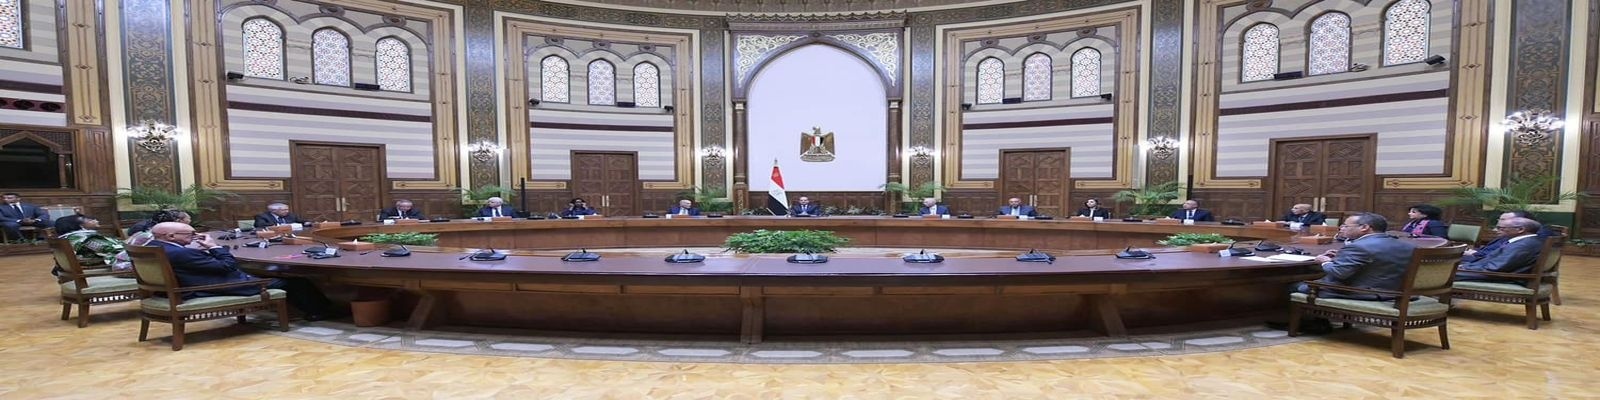 السيد الرئيس عبد الفتاح السيسي يستقبل مجلس أمناء مكتبة الإسكندرية